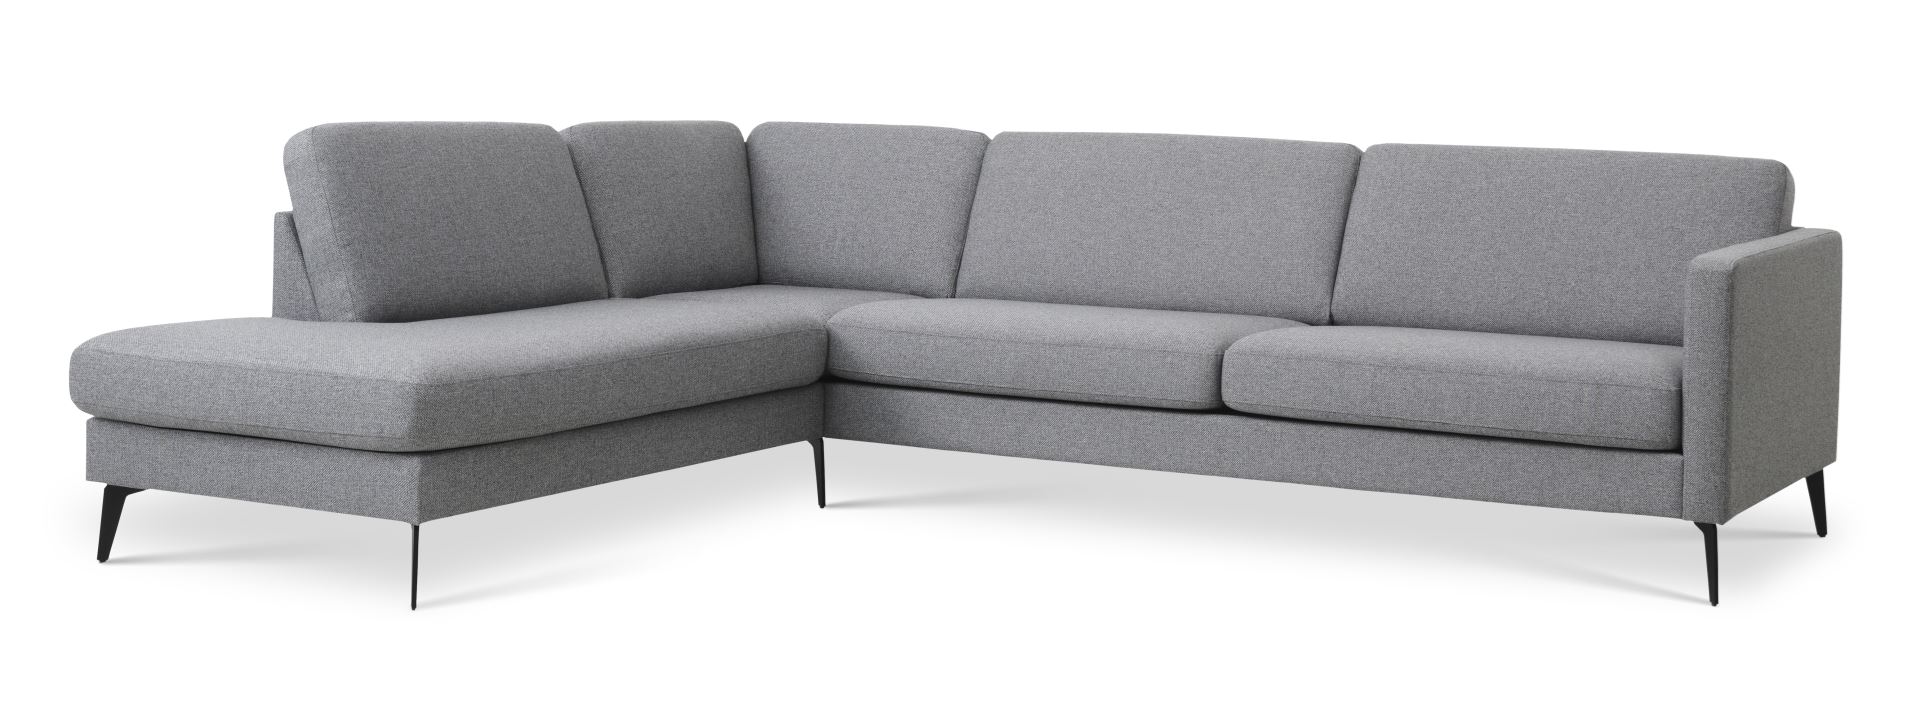 Ask sæt 60 stor OE sofa, m. venstre chaiselong - lys granitgrå polyester stof og Eiffel ben